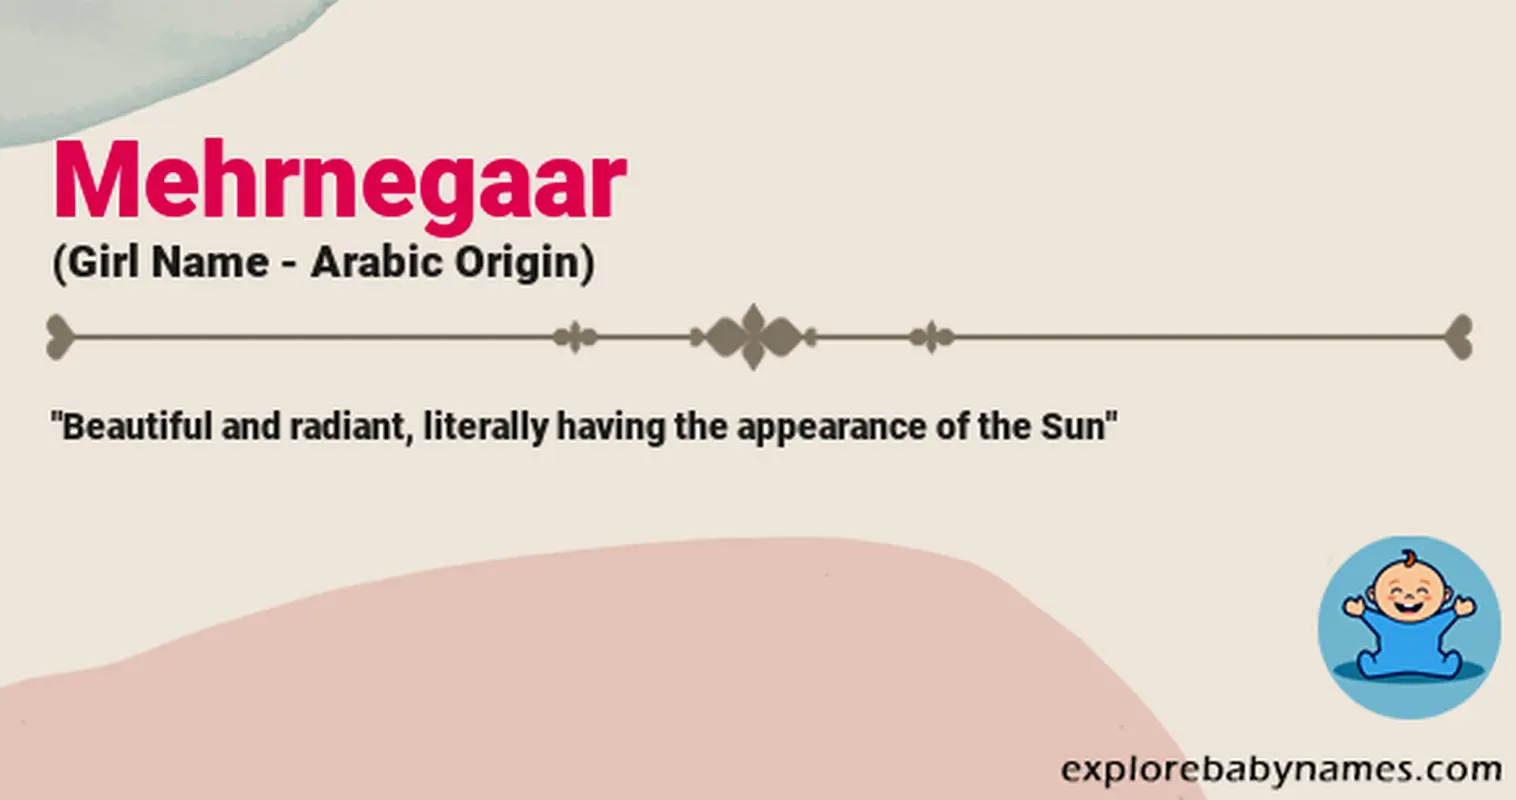 Meaning of Mehrnegaar